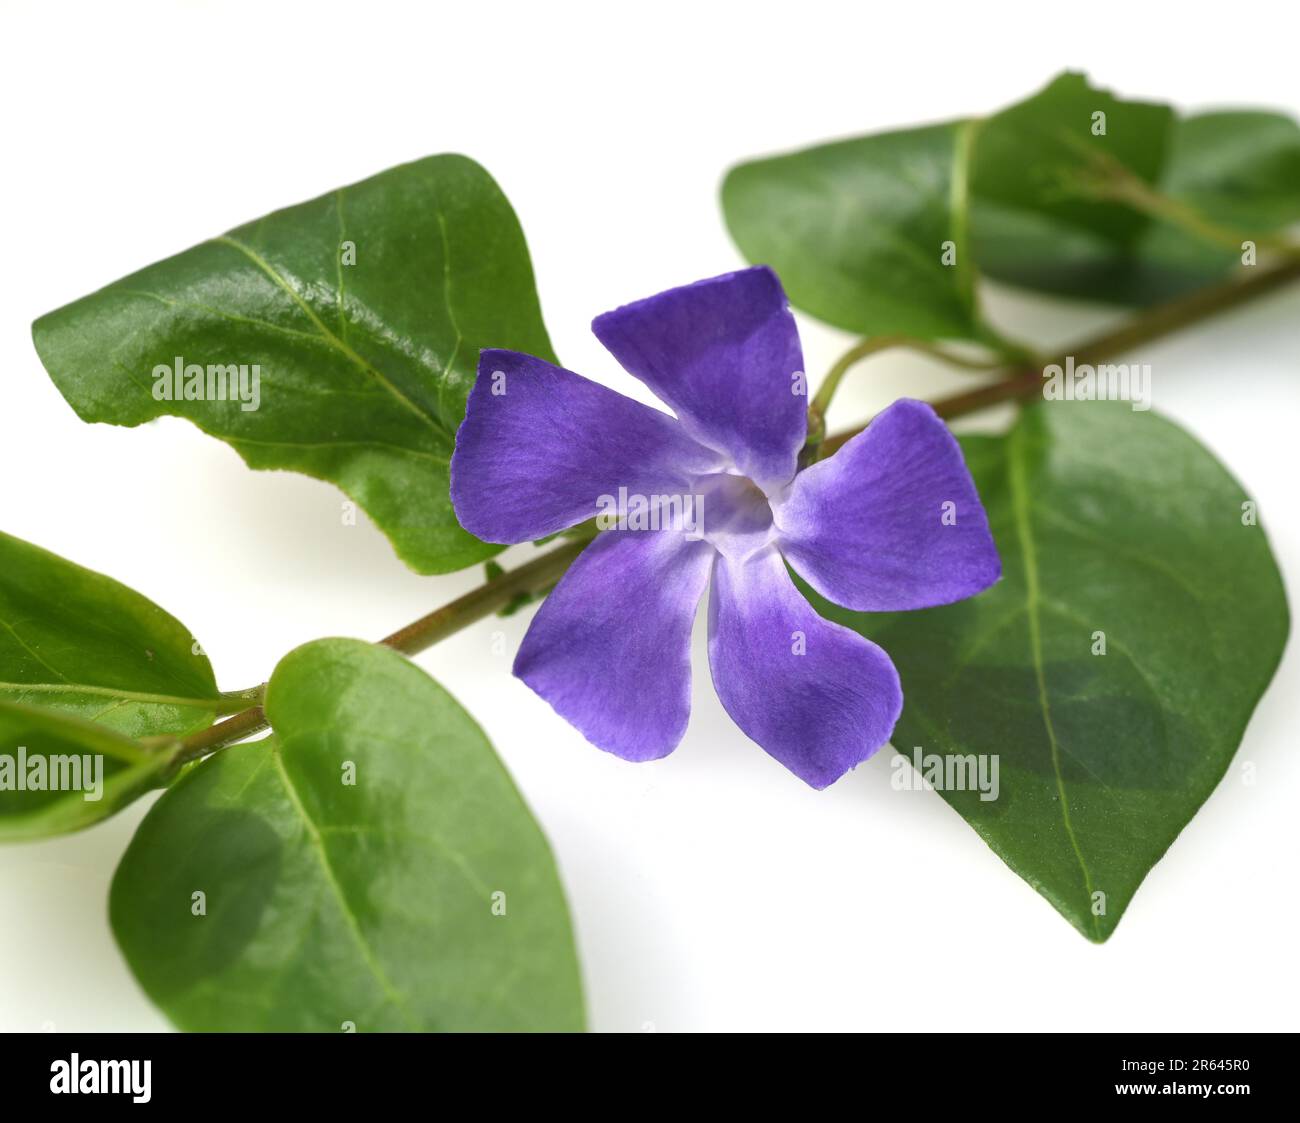 Immergruen, Vinca major, ist eine wichtige Heilpflanze mit blauen  Blueten und wird auch als Bodendecker verwendet. Periwinkle, Vinca major, is an imp Stock Photo